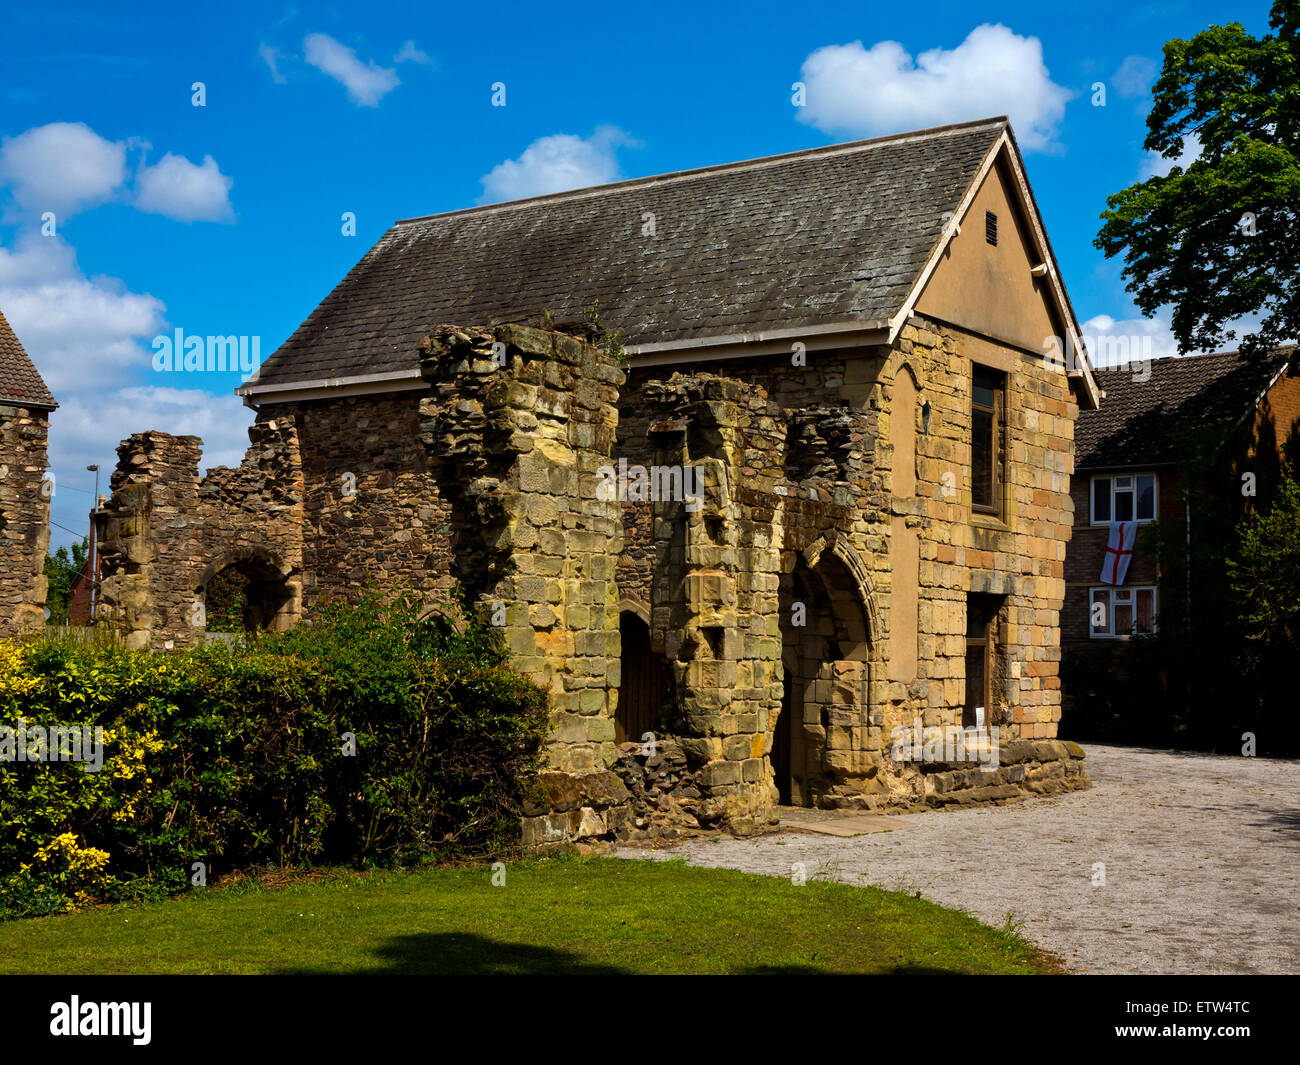 Das alte Pfarrhaus Museum in Loughborough Leicestershire England UK gebaut ein Stein mittelalterlichen Herrenhaus, die jetzt als Museum genutzt Stockfoto